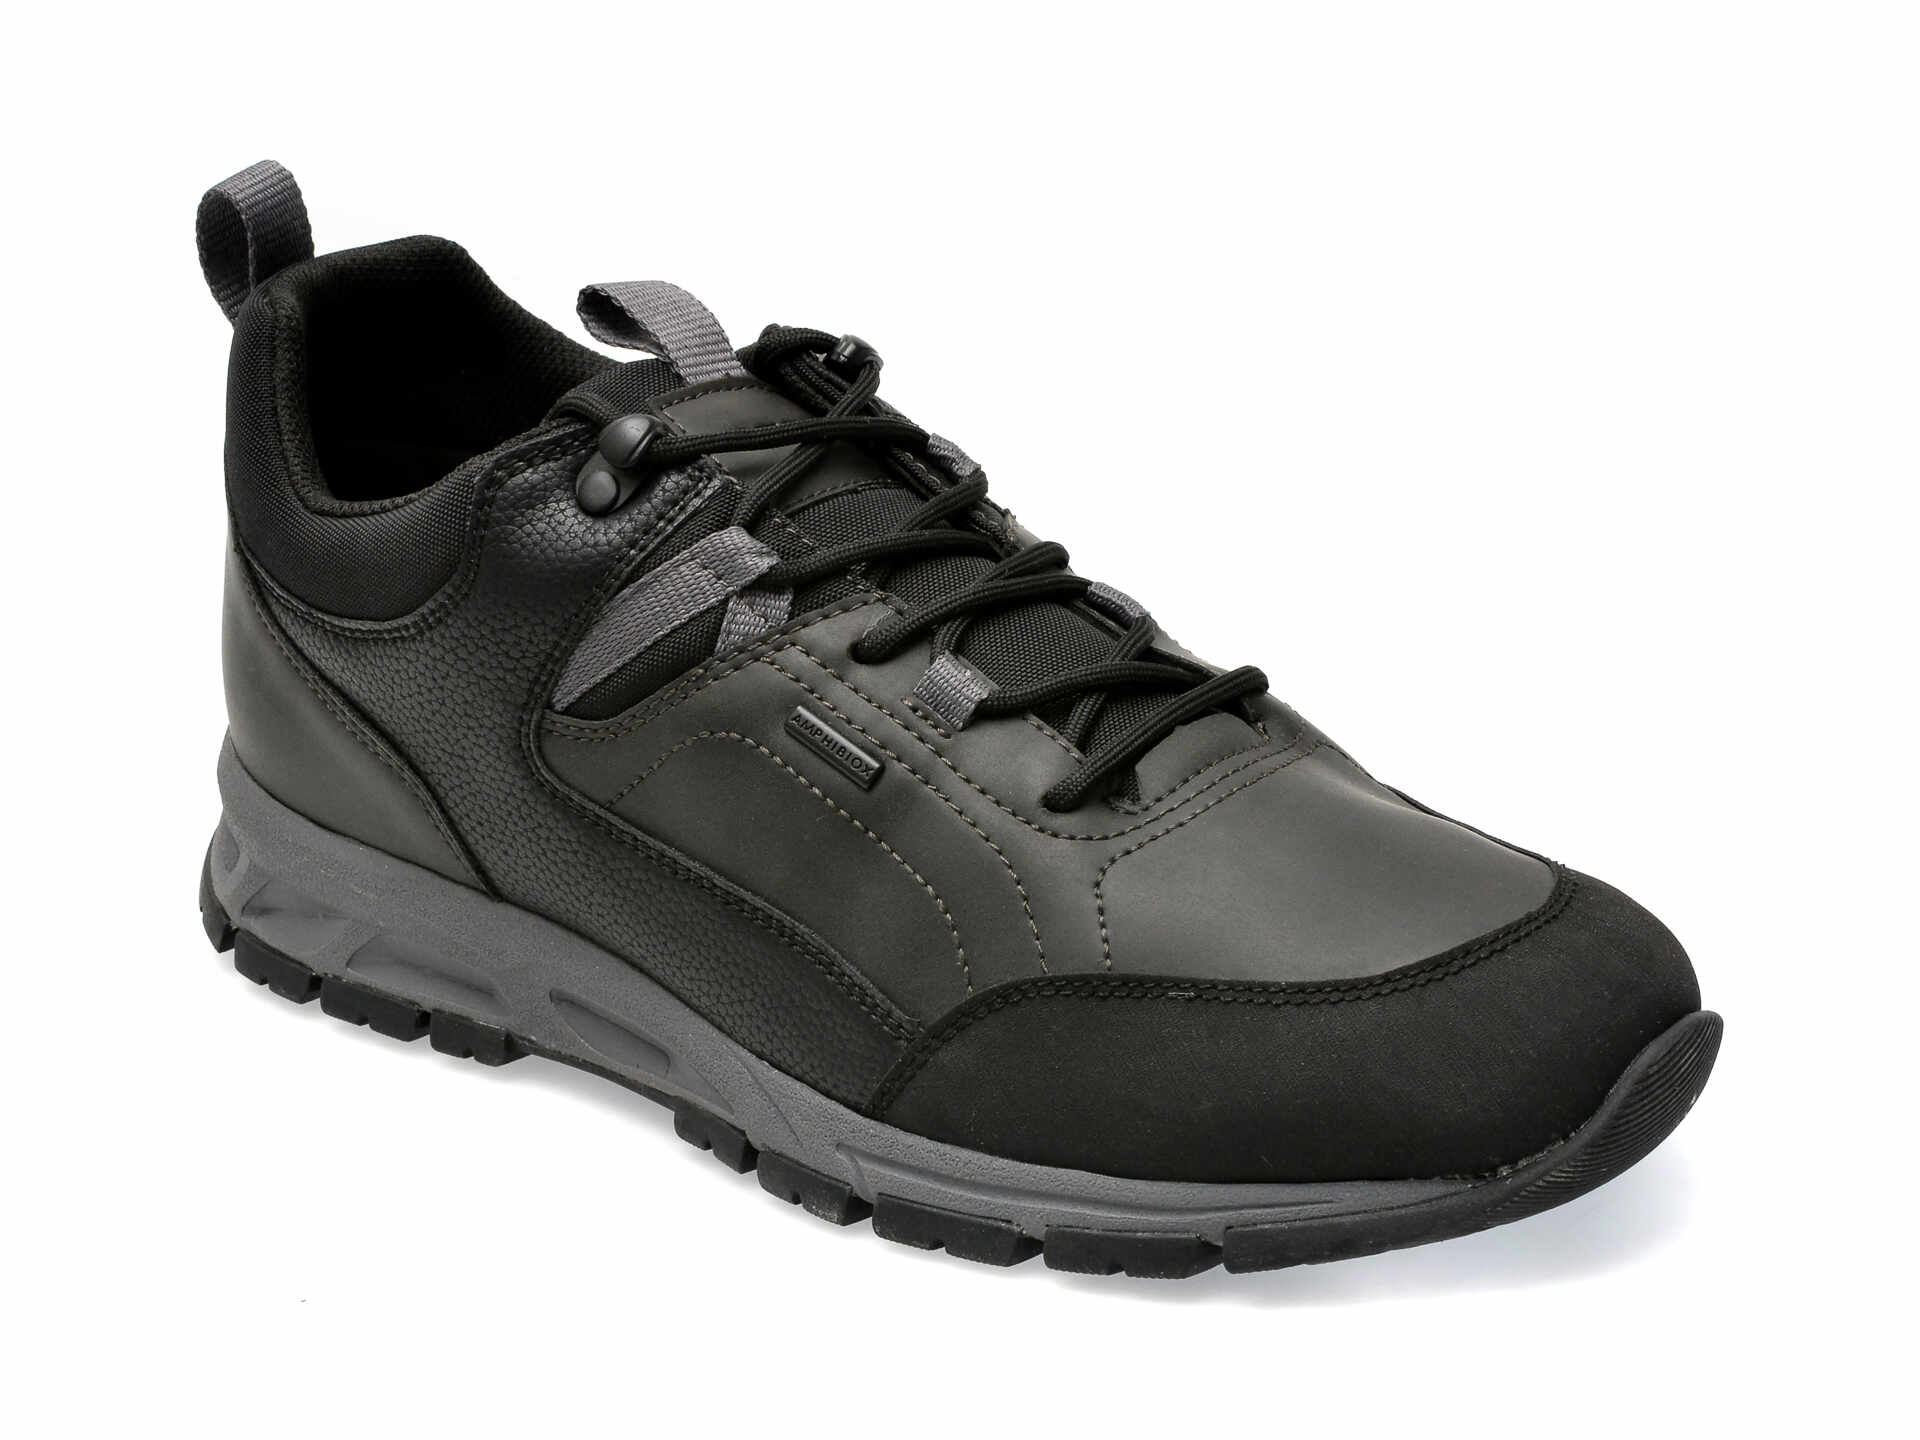 Pantofi GEOX negri, U360MC, din piele ecologica